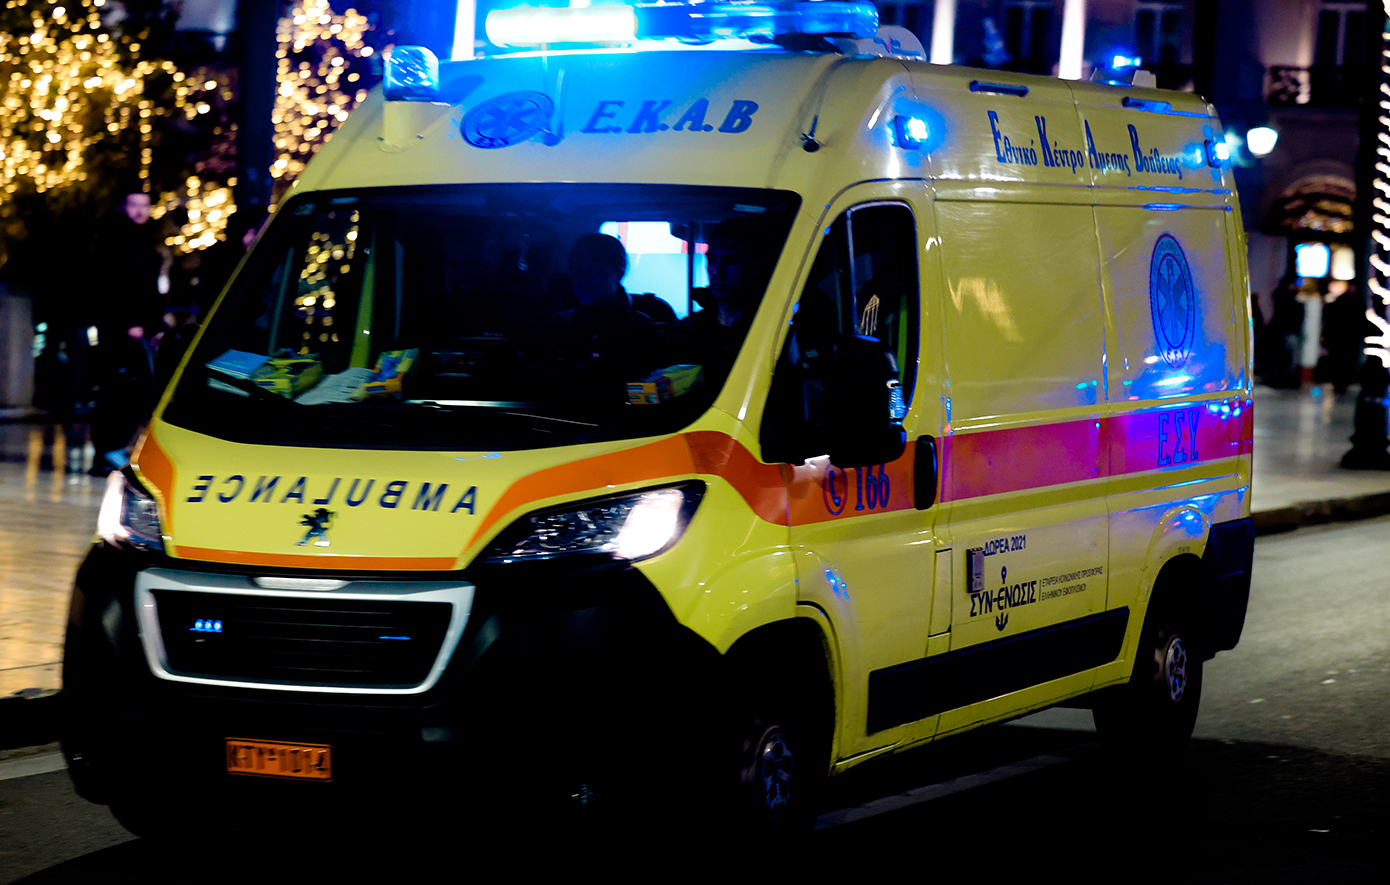 Παραλίγο πνιγμός 6χρονου αγοριού σε πισίνα ξενοδοχείου στην Πρέβεζα &#8211; Μεταφέρεται διασωληνωμένο στο νοσοκομείο